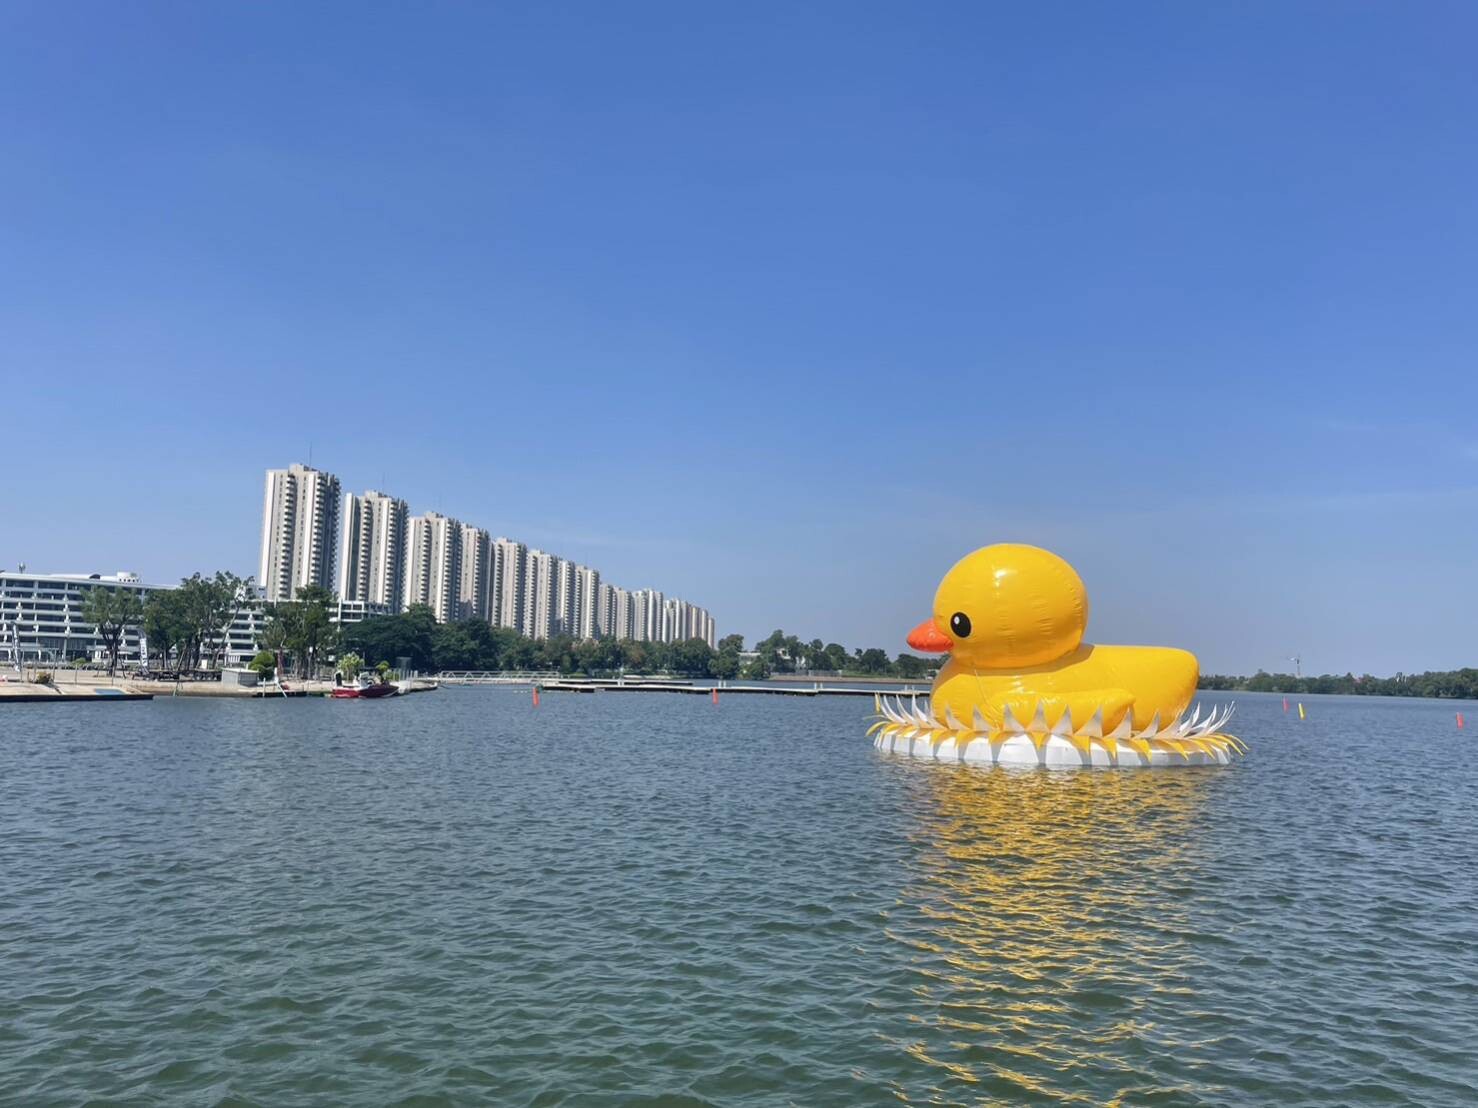 อิมแพ็ค เชิญชวนร่วมงาน ลอย ริม เลค เทศกาลลอยกระทงสุดยิ่งใหญ่ ริมทะเลสาบเมืองทองธานี